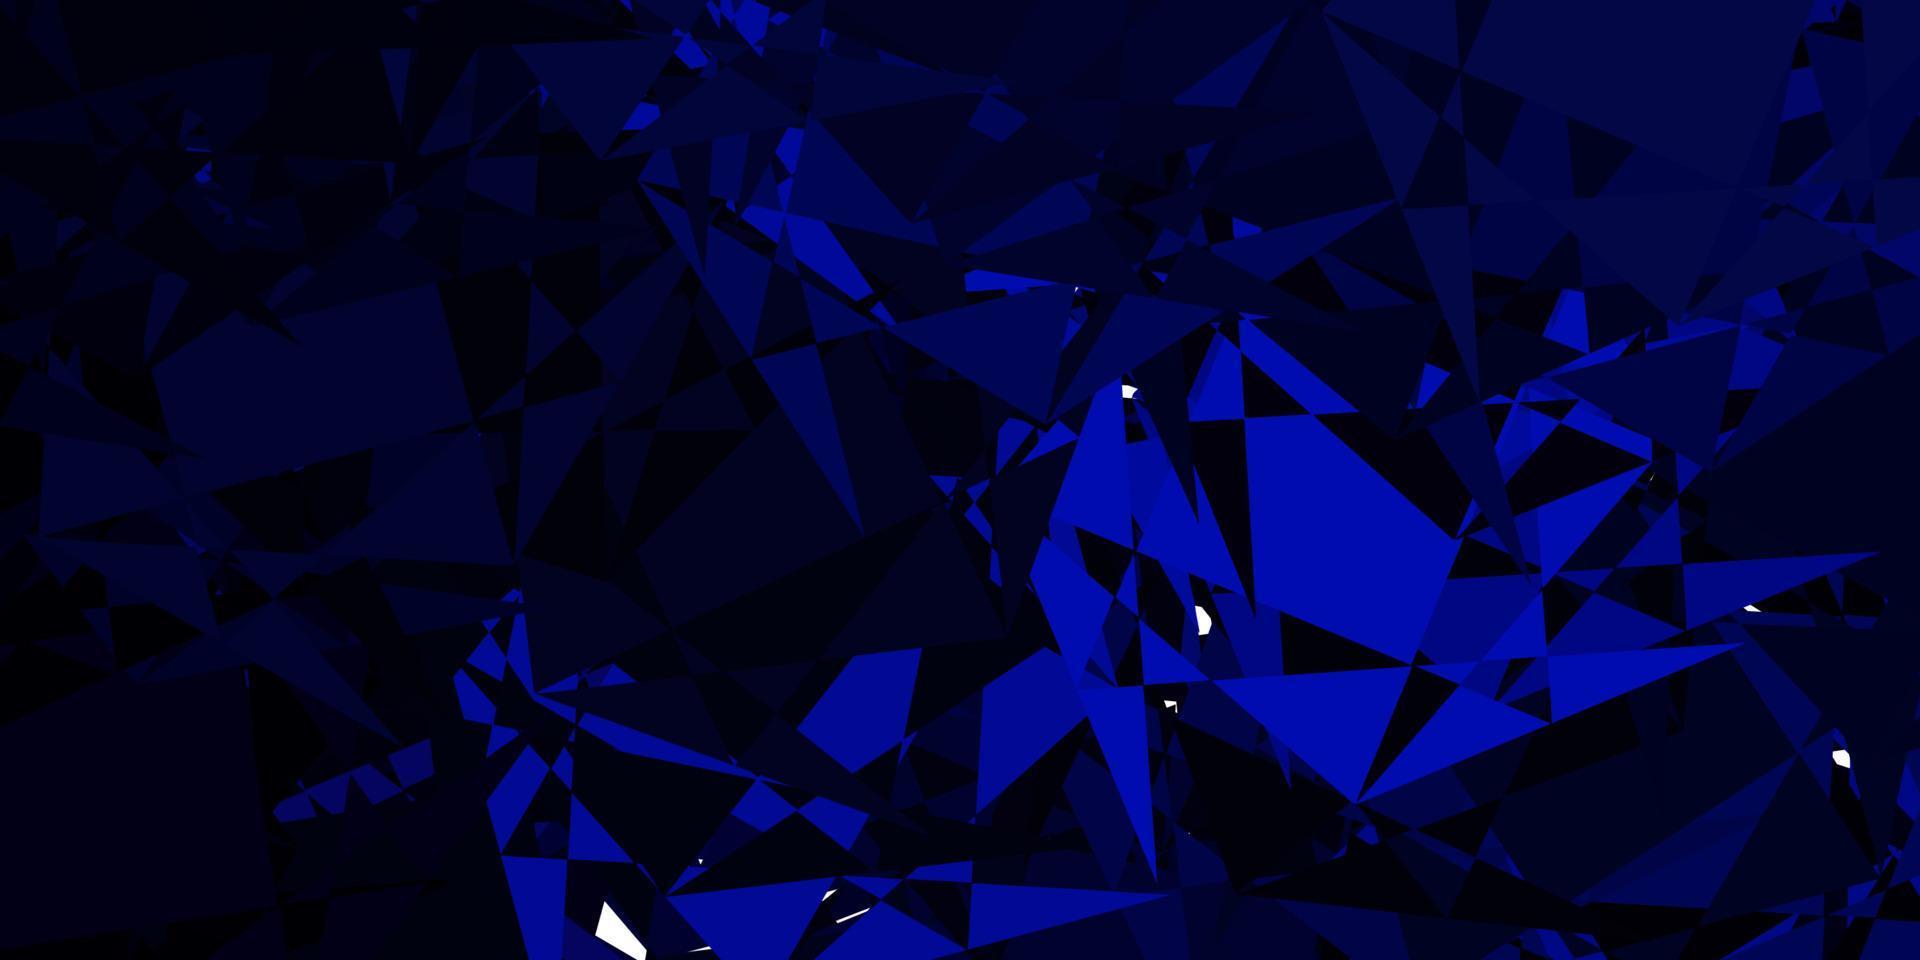 sfondo vettoriale blu scuro con forme poligonali.